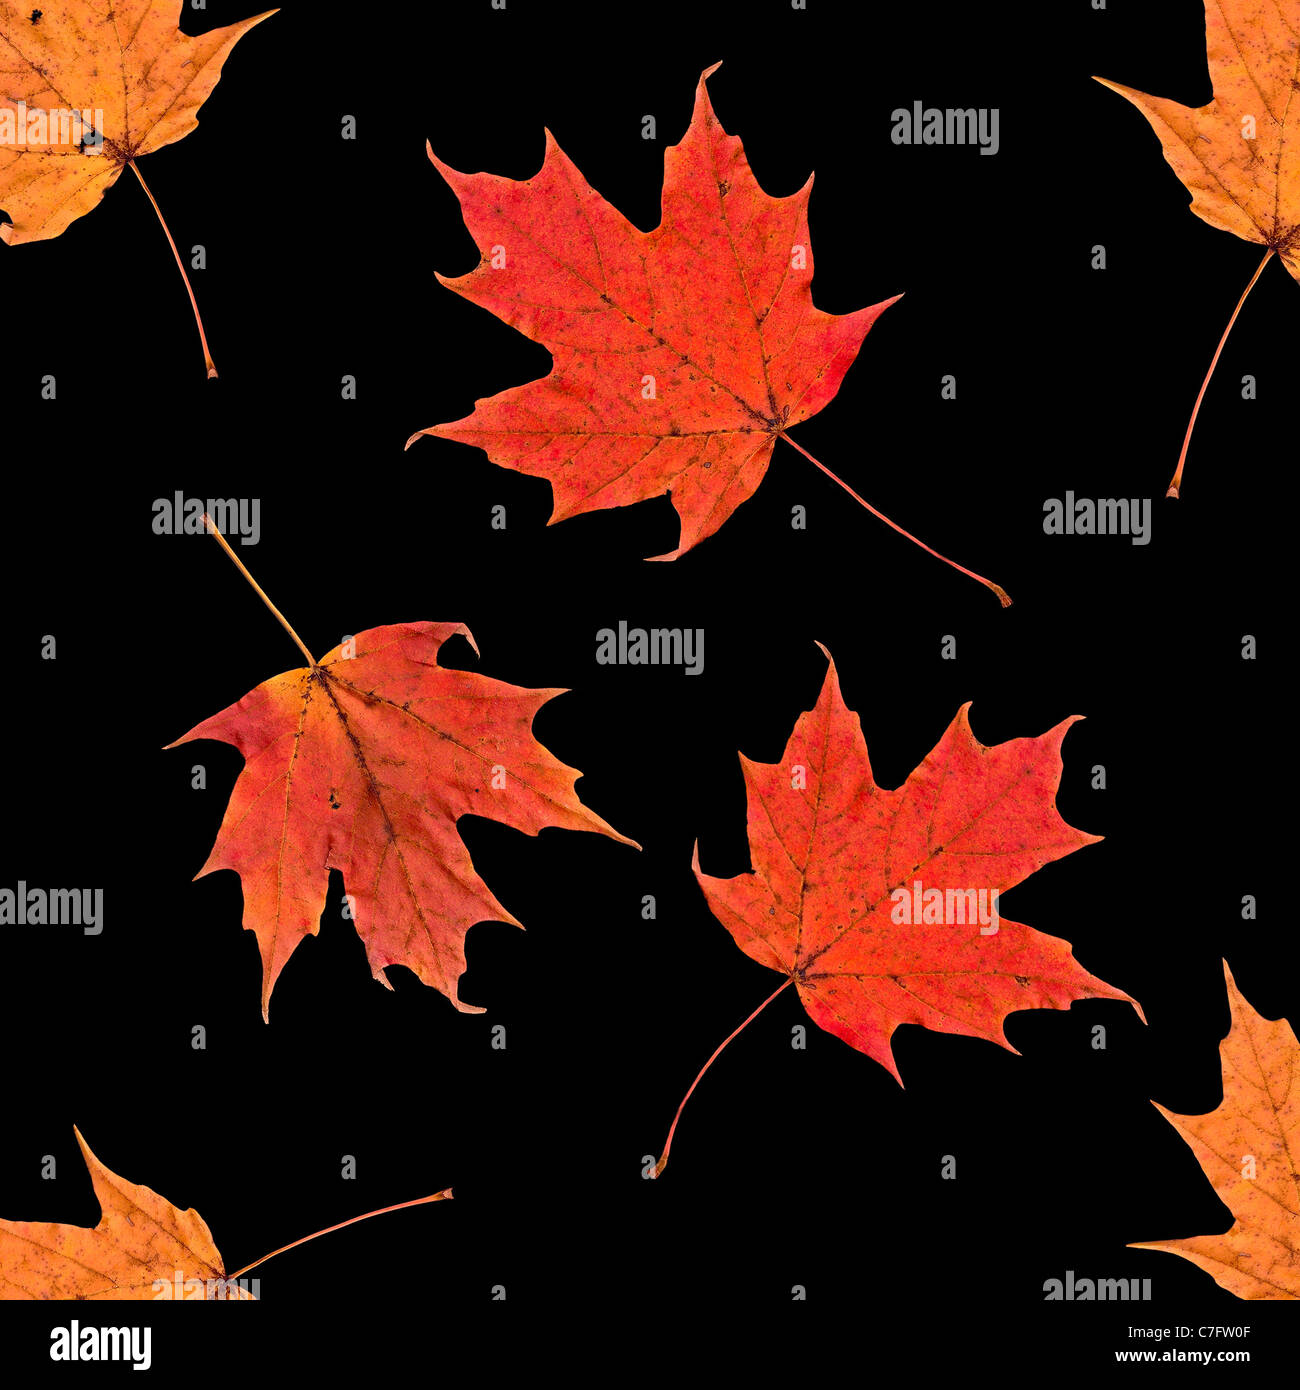 Colección abstracto rojo amarillo naranja Grunge Otoño caen las hojas de arce de azúcar Acer saccharum aislado en un patrón cuadrado negro Foto de stock